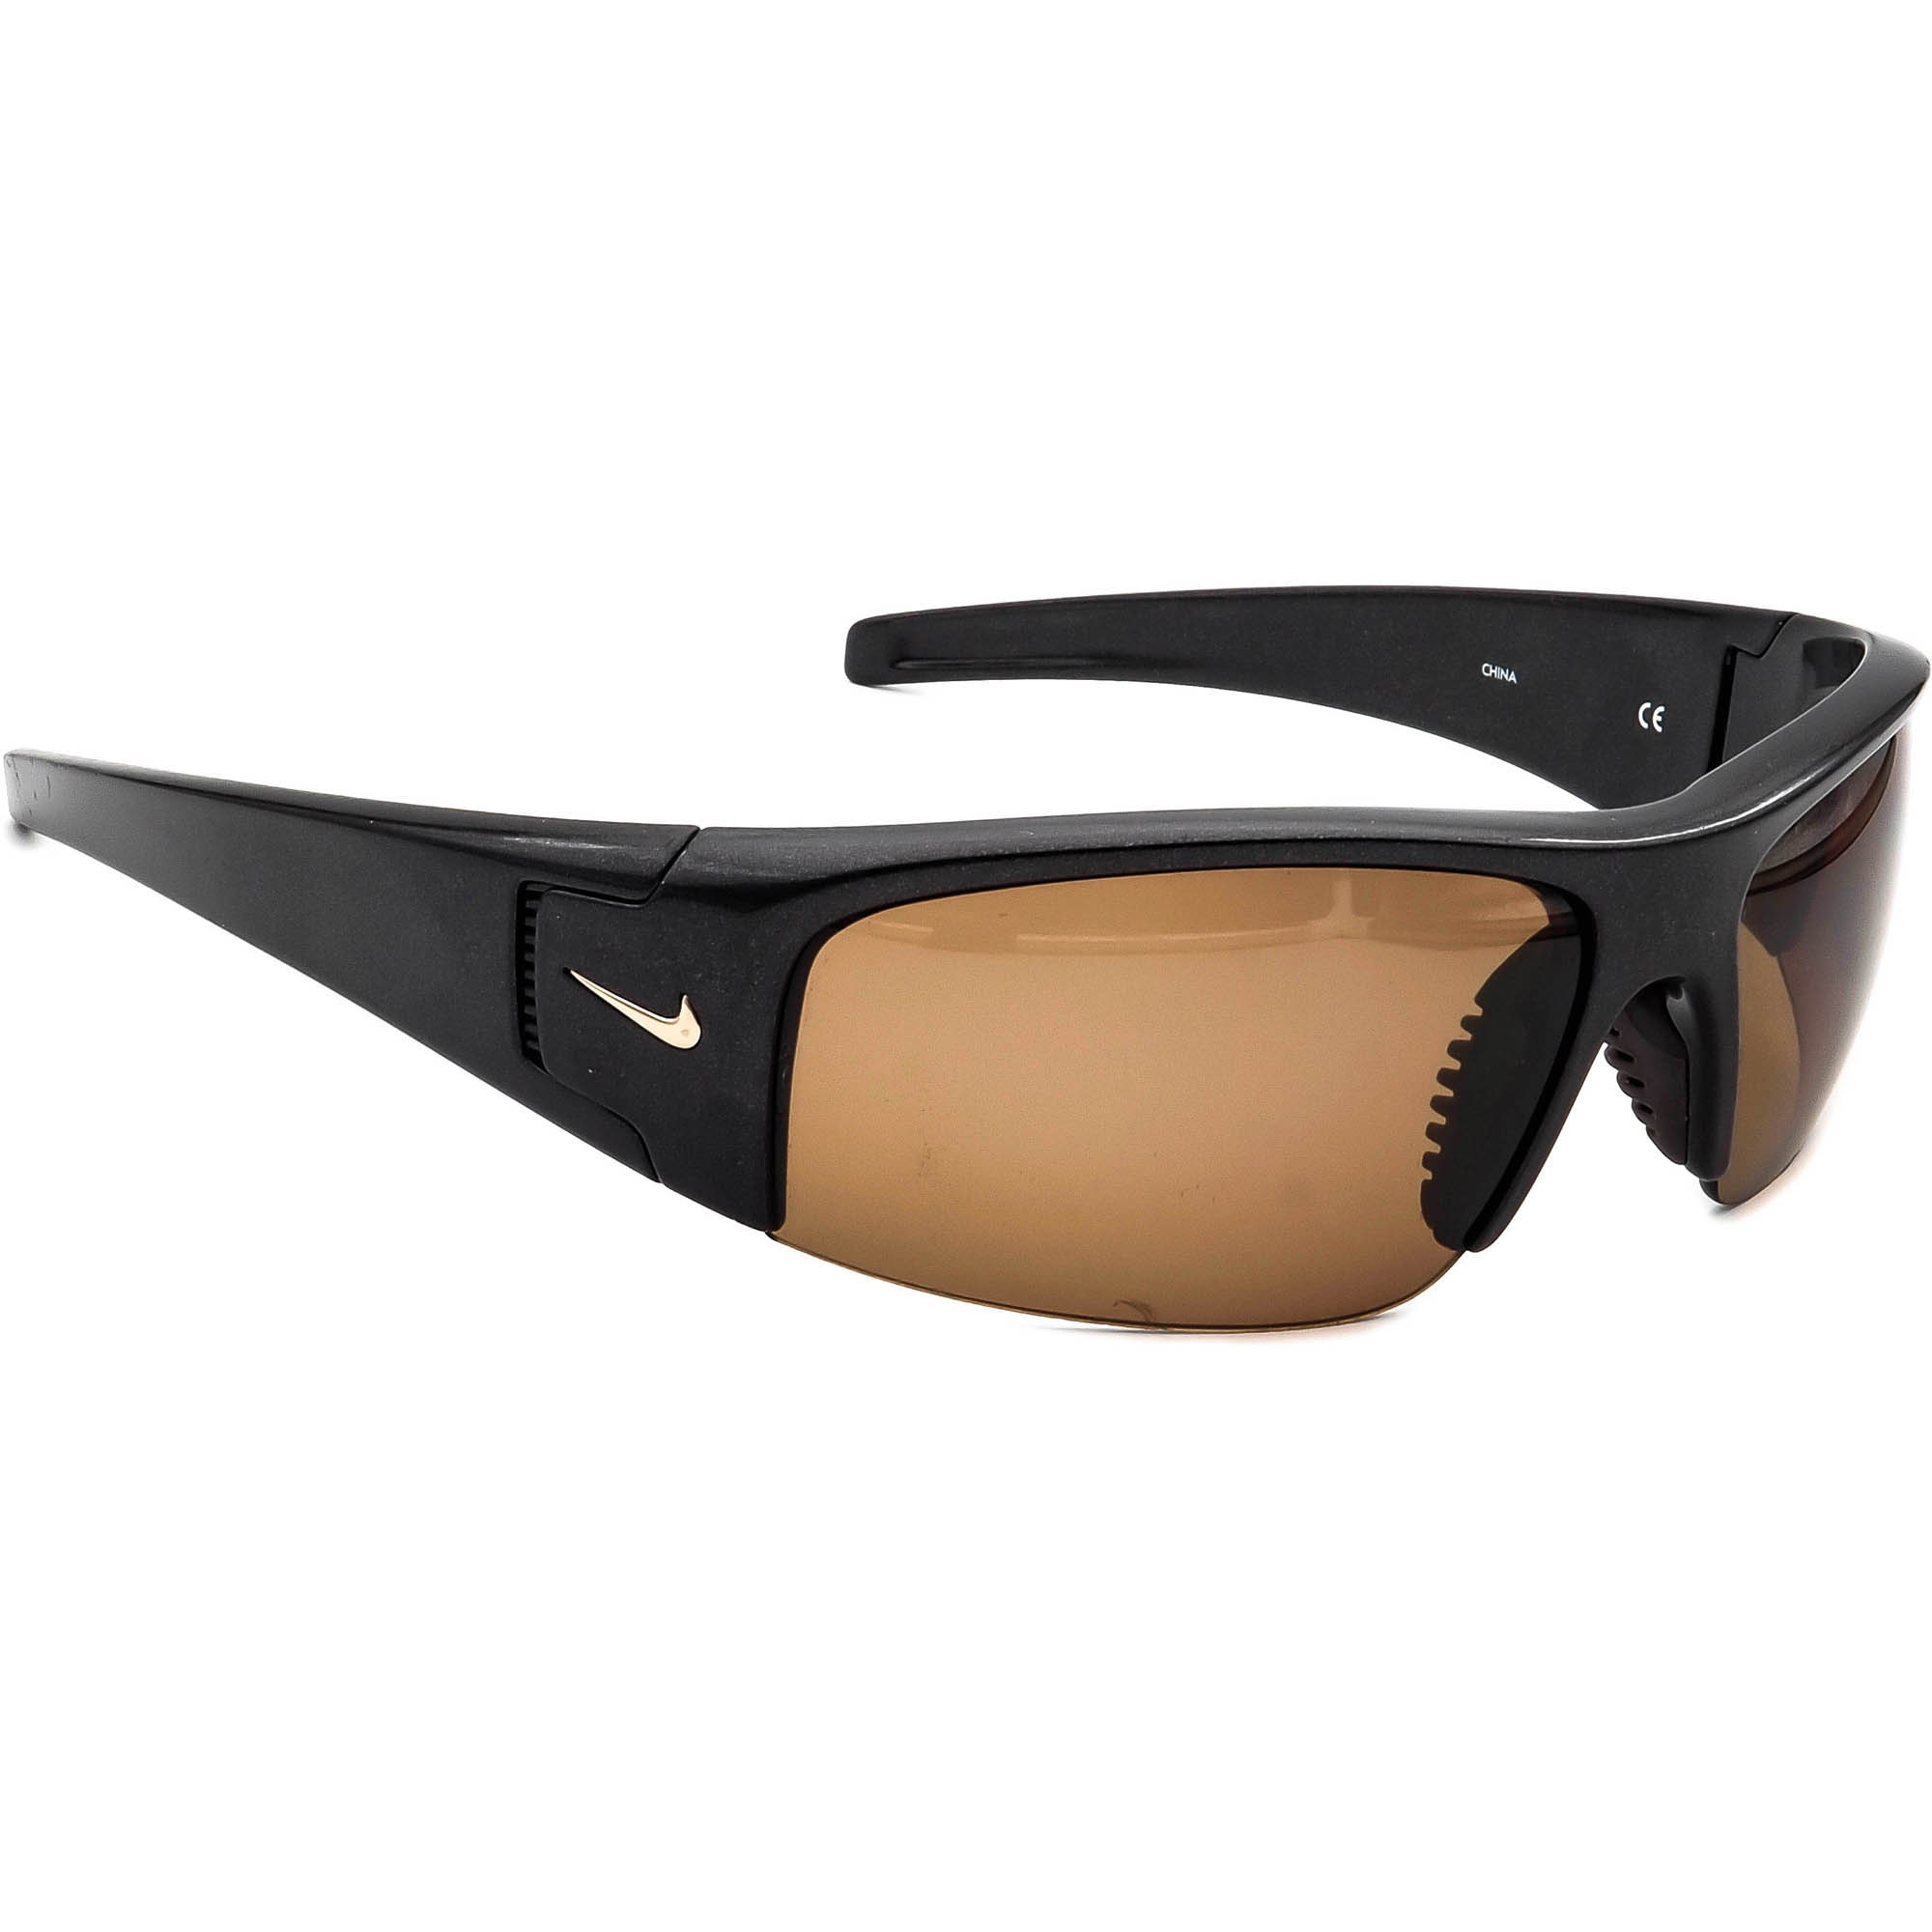 Nike Polarized Sunglasses EV0327 027 Diverge Gray Half Wrap - Etsy Ireland